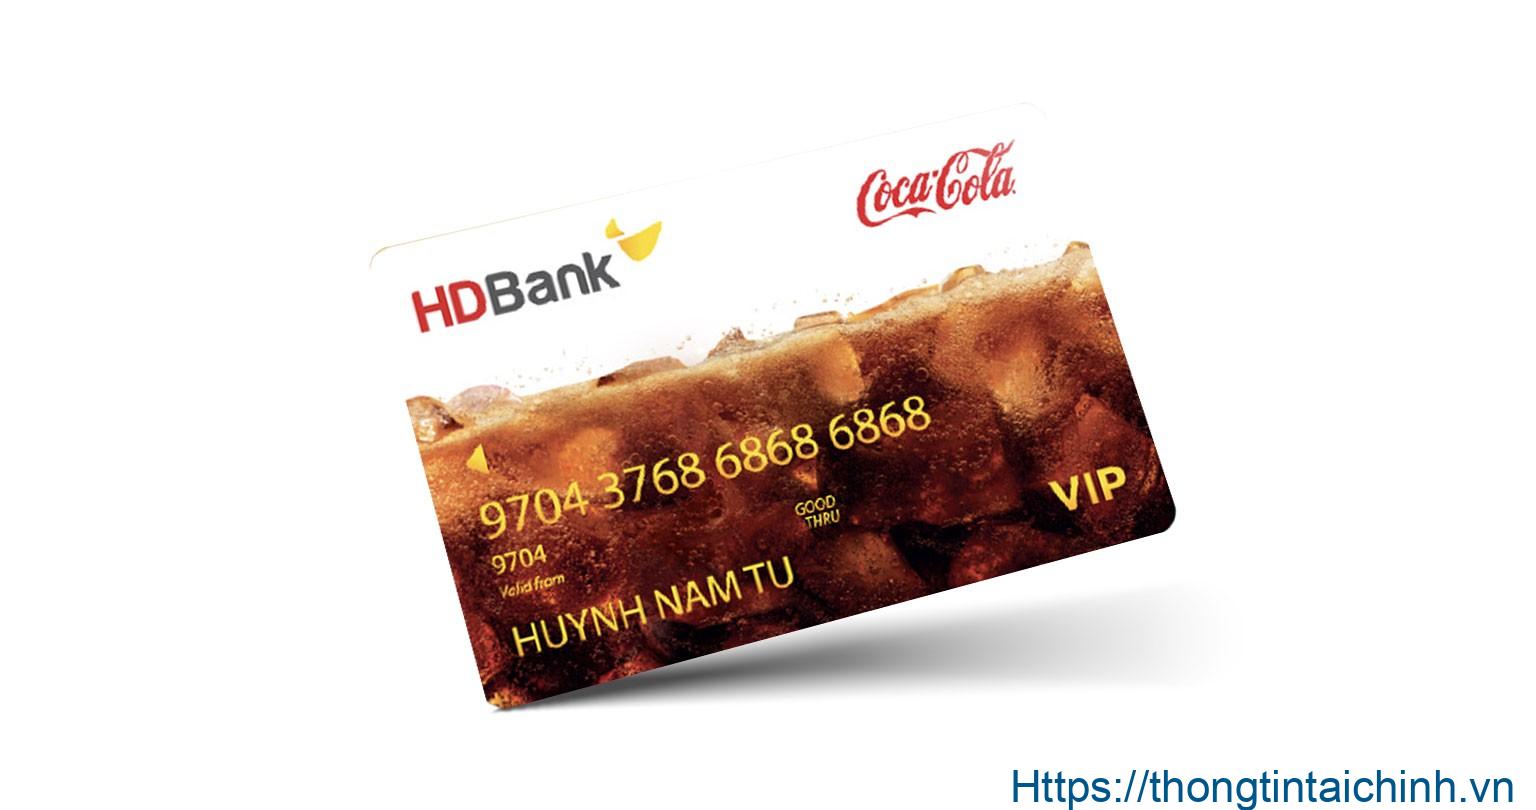 Bạn có biết thẻ ATM của ngân hàng HDBank rút được bao nhiêu tiền chưa?